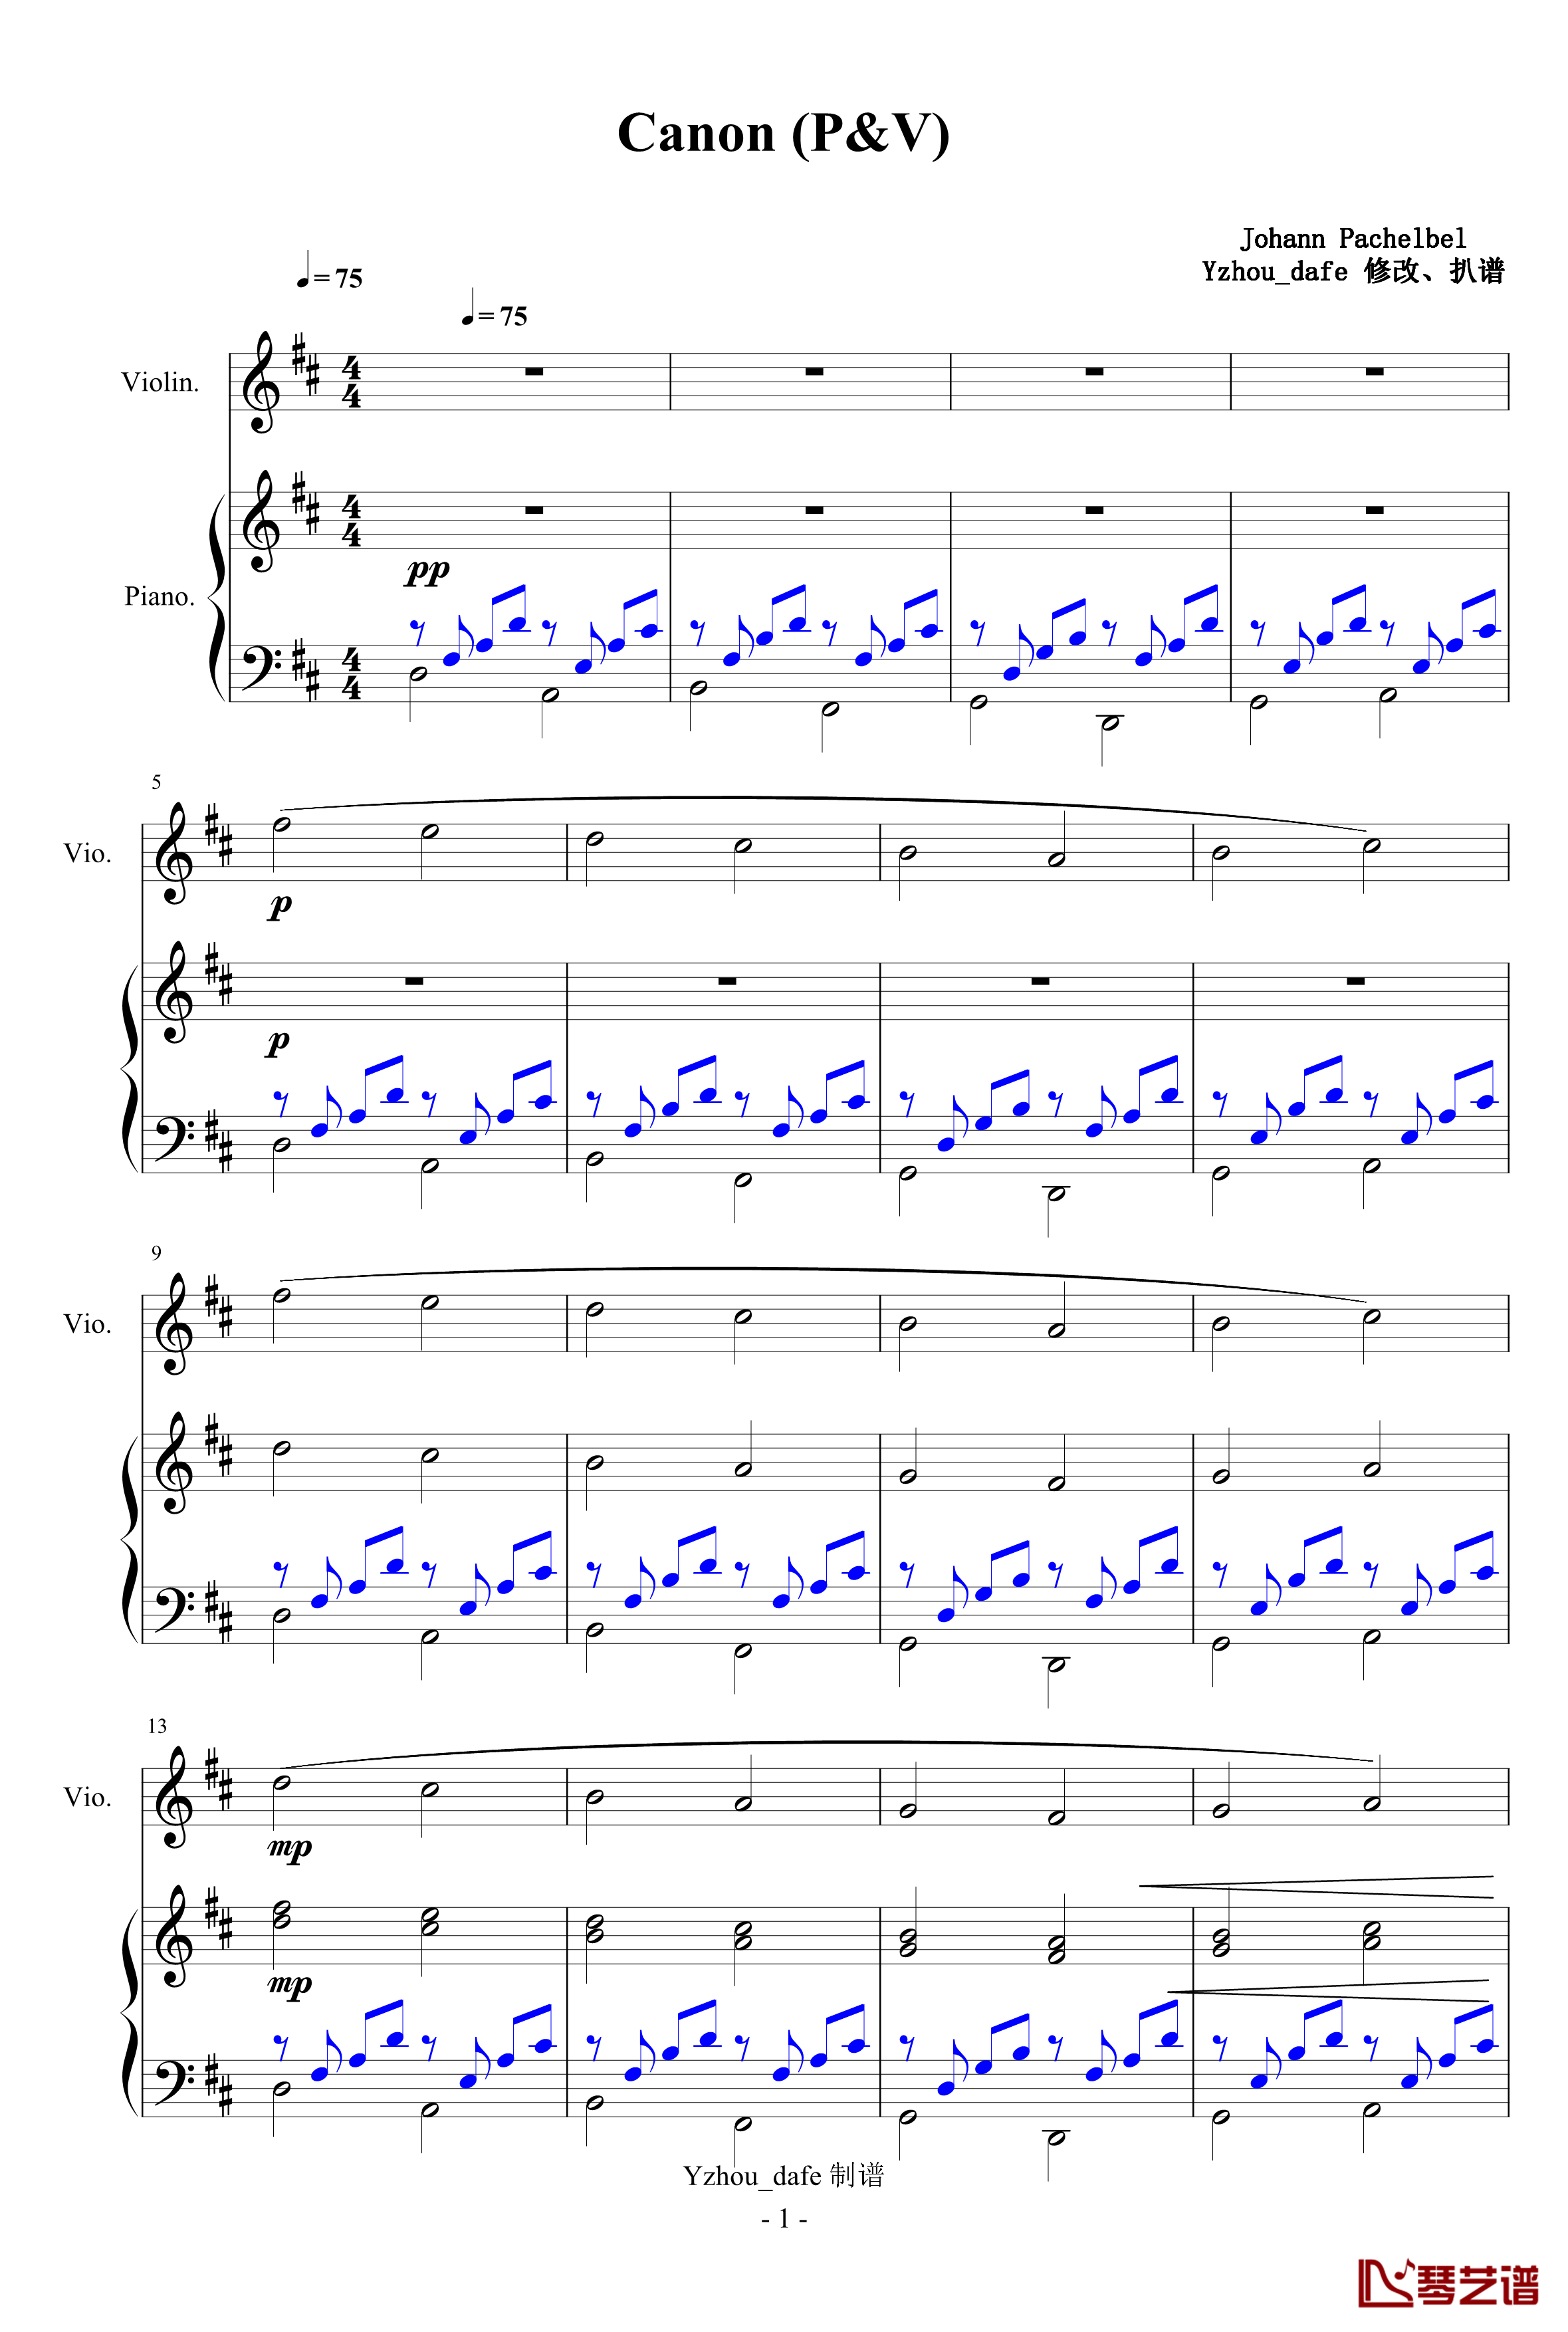 卡农钢琴谱-小提琴钢琴合奏-Johann Pachelbel1